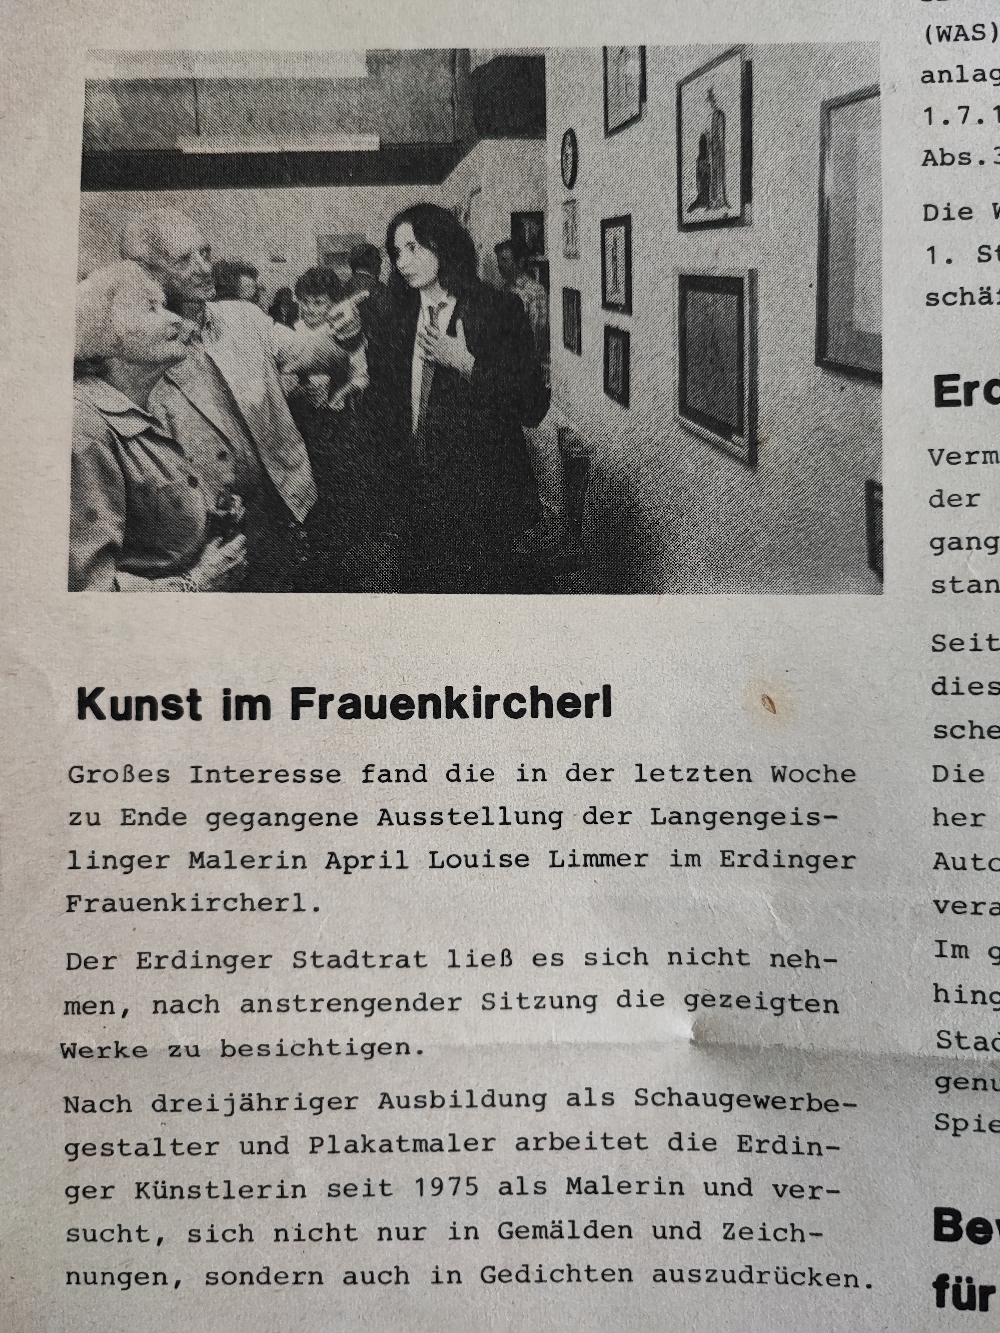 1982 erste Ausstellung ... Ca 200 Gäste FRAUNKIRCHERL ERDING